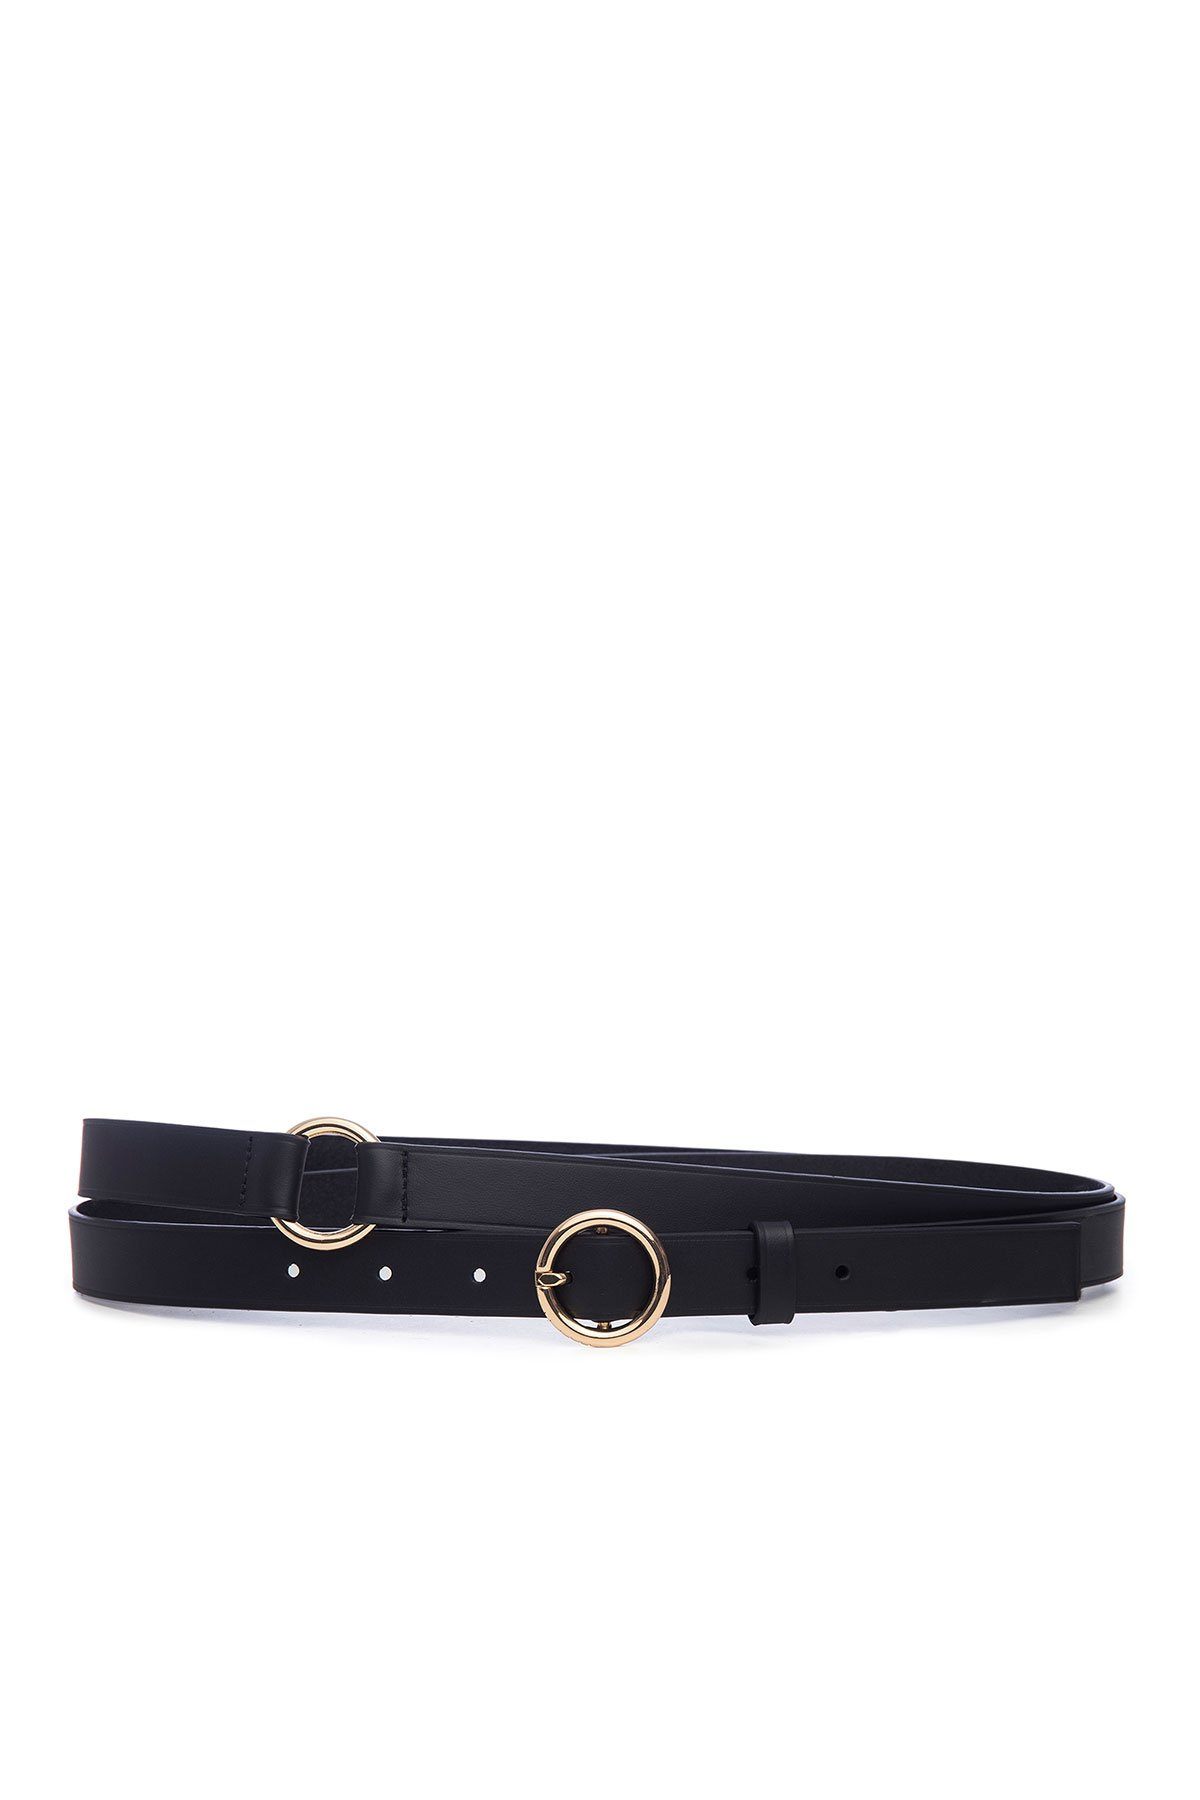 Double Wrap Belt Noir - shop-olivia.com